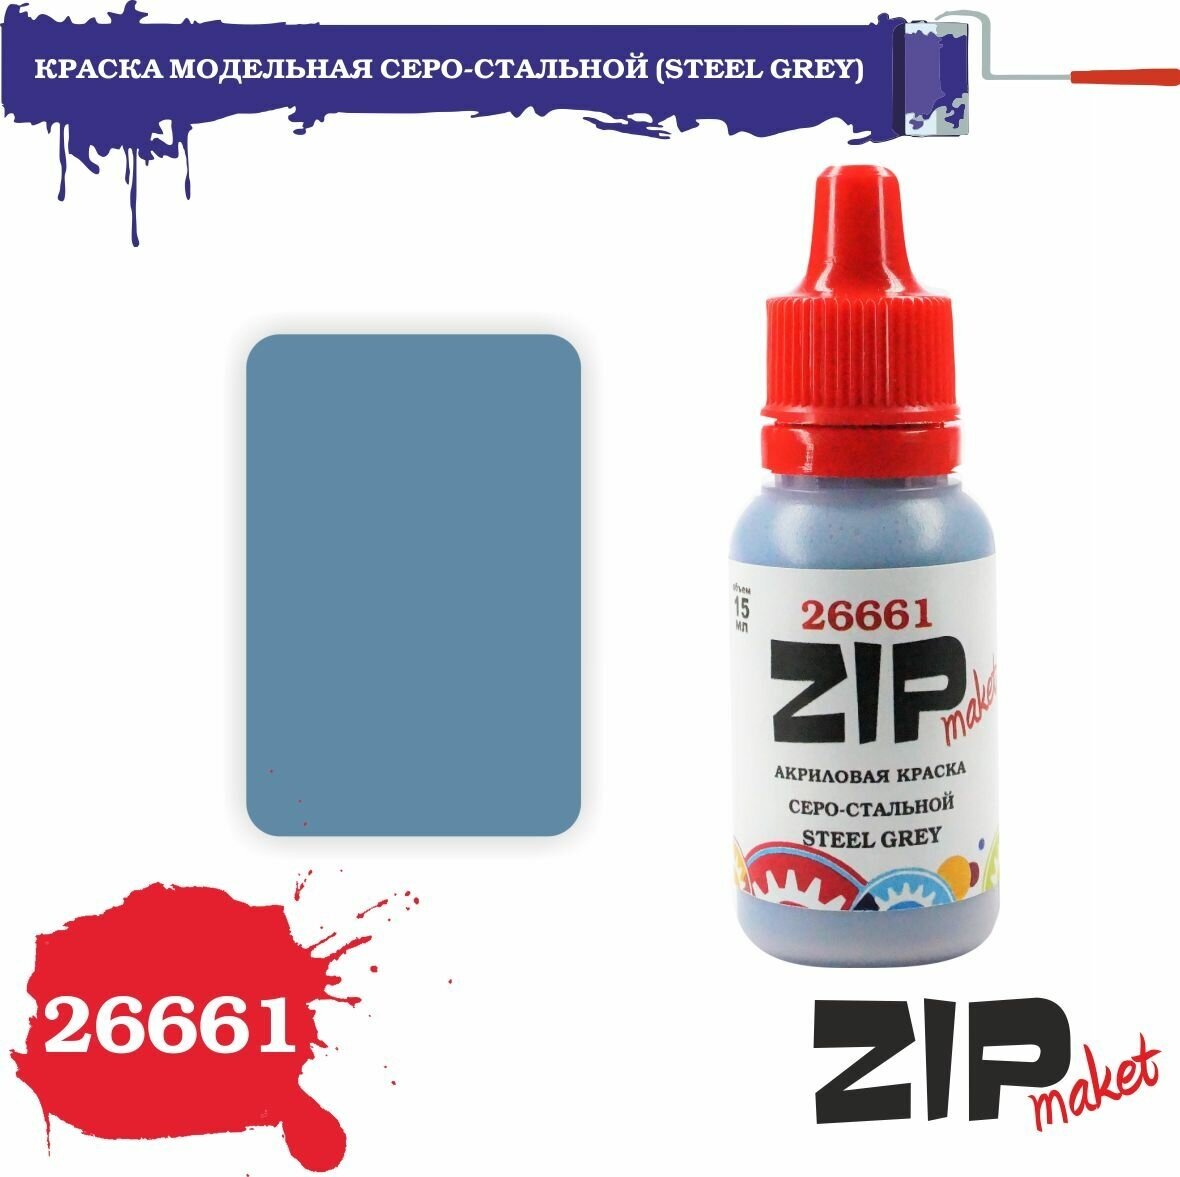 Акриловая краска для сборных моделей 26661 краска модельная серо-стальной (STEEL GREY) ZIPmaket